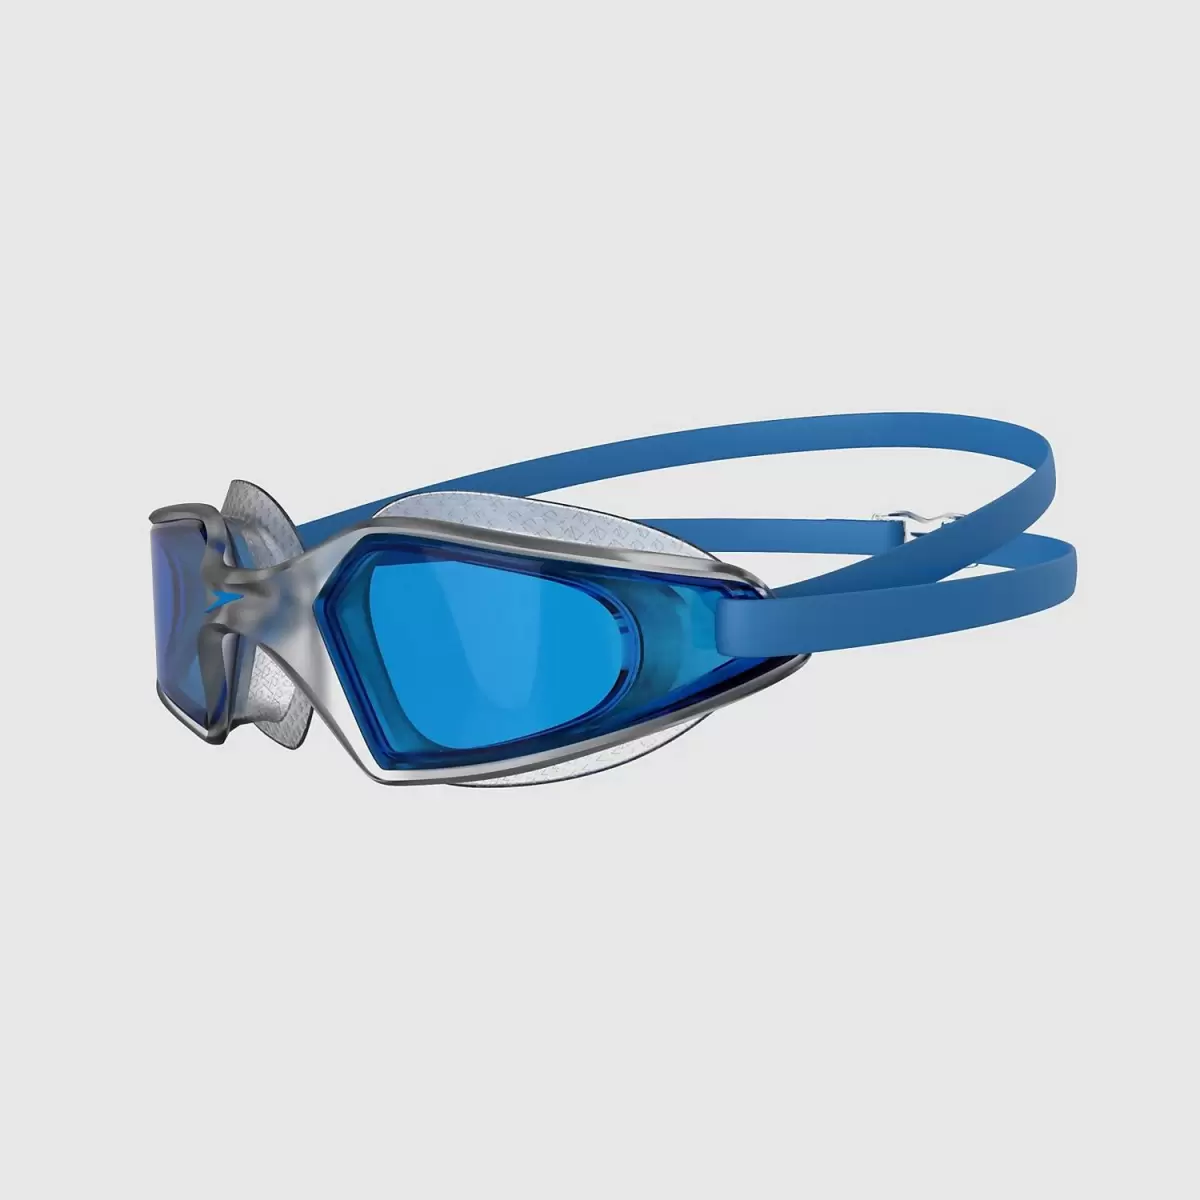 Unisex-Hydropulse-Schwimmbrille Klar/Blau Speedo Fitness Damen